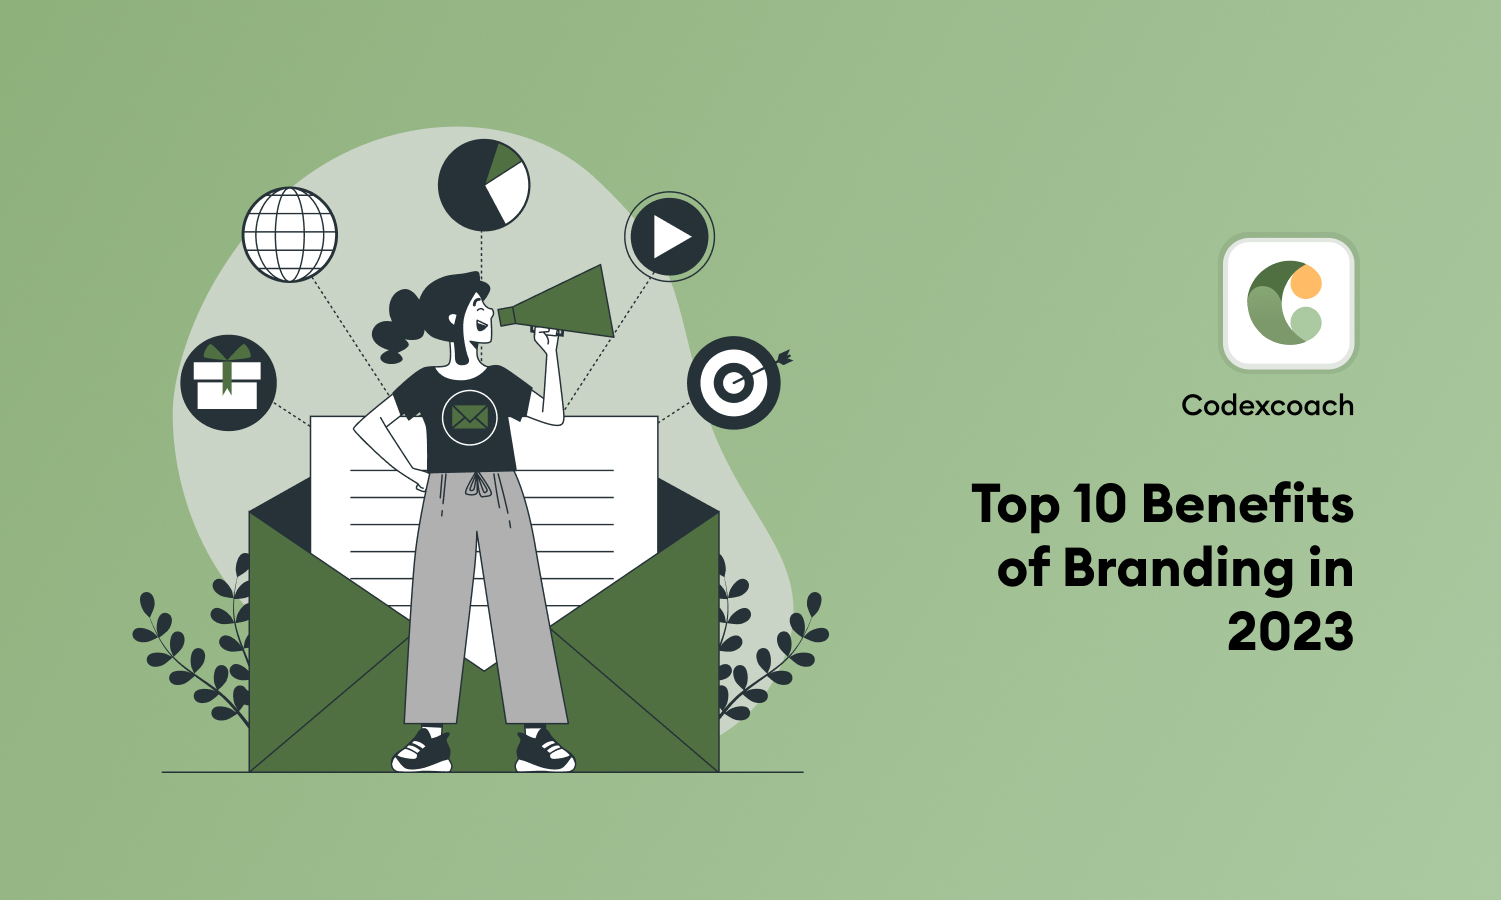 Top 10 Benefits of Branding in 2023